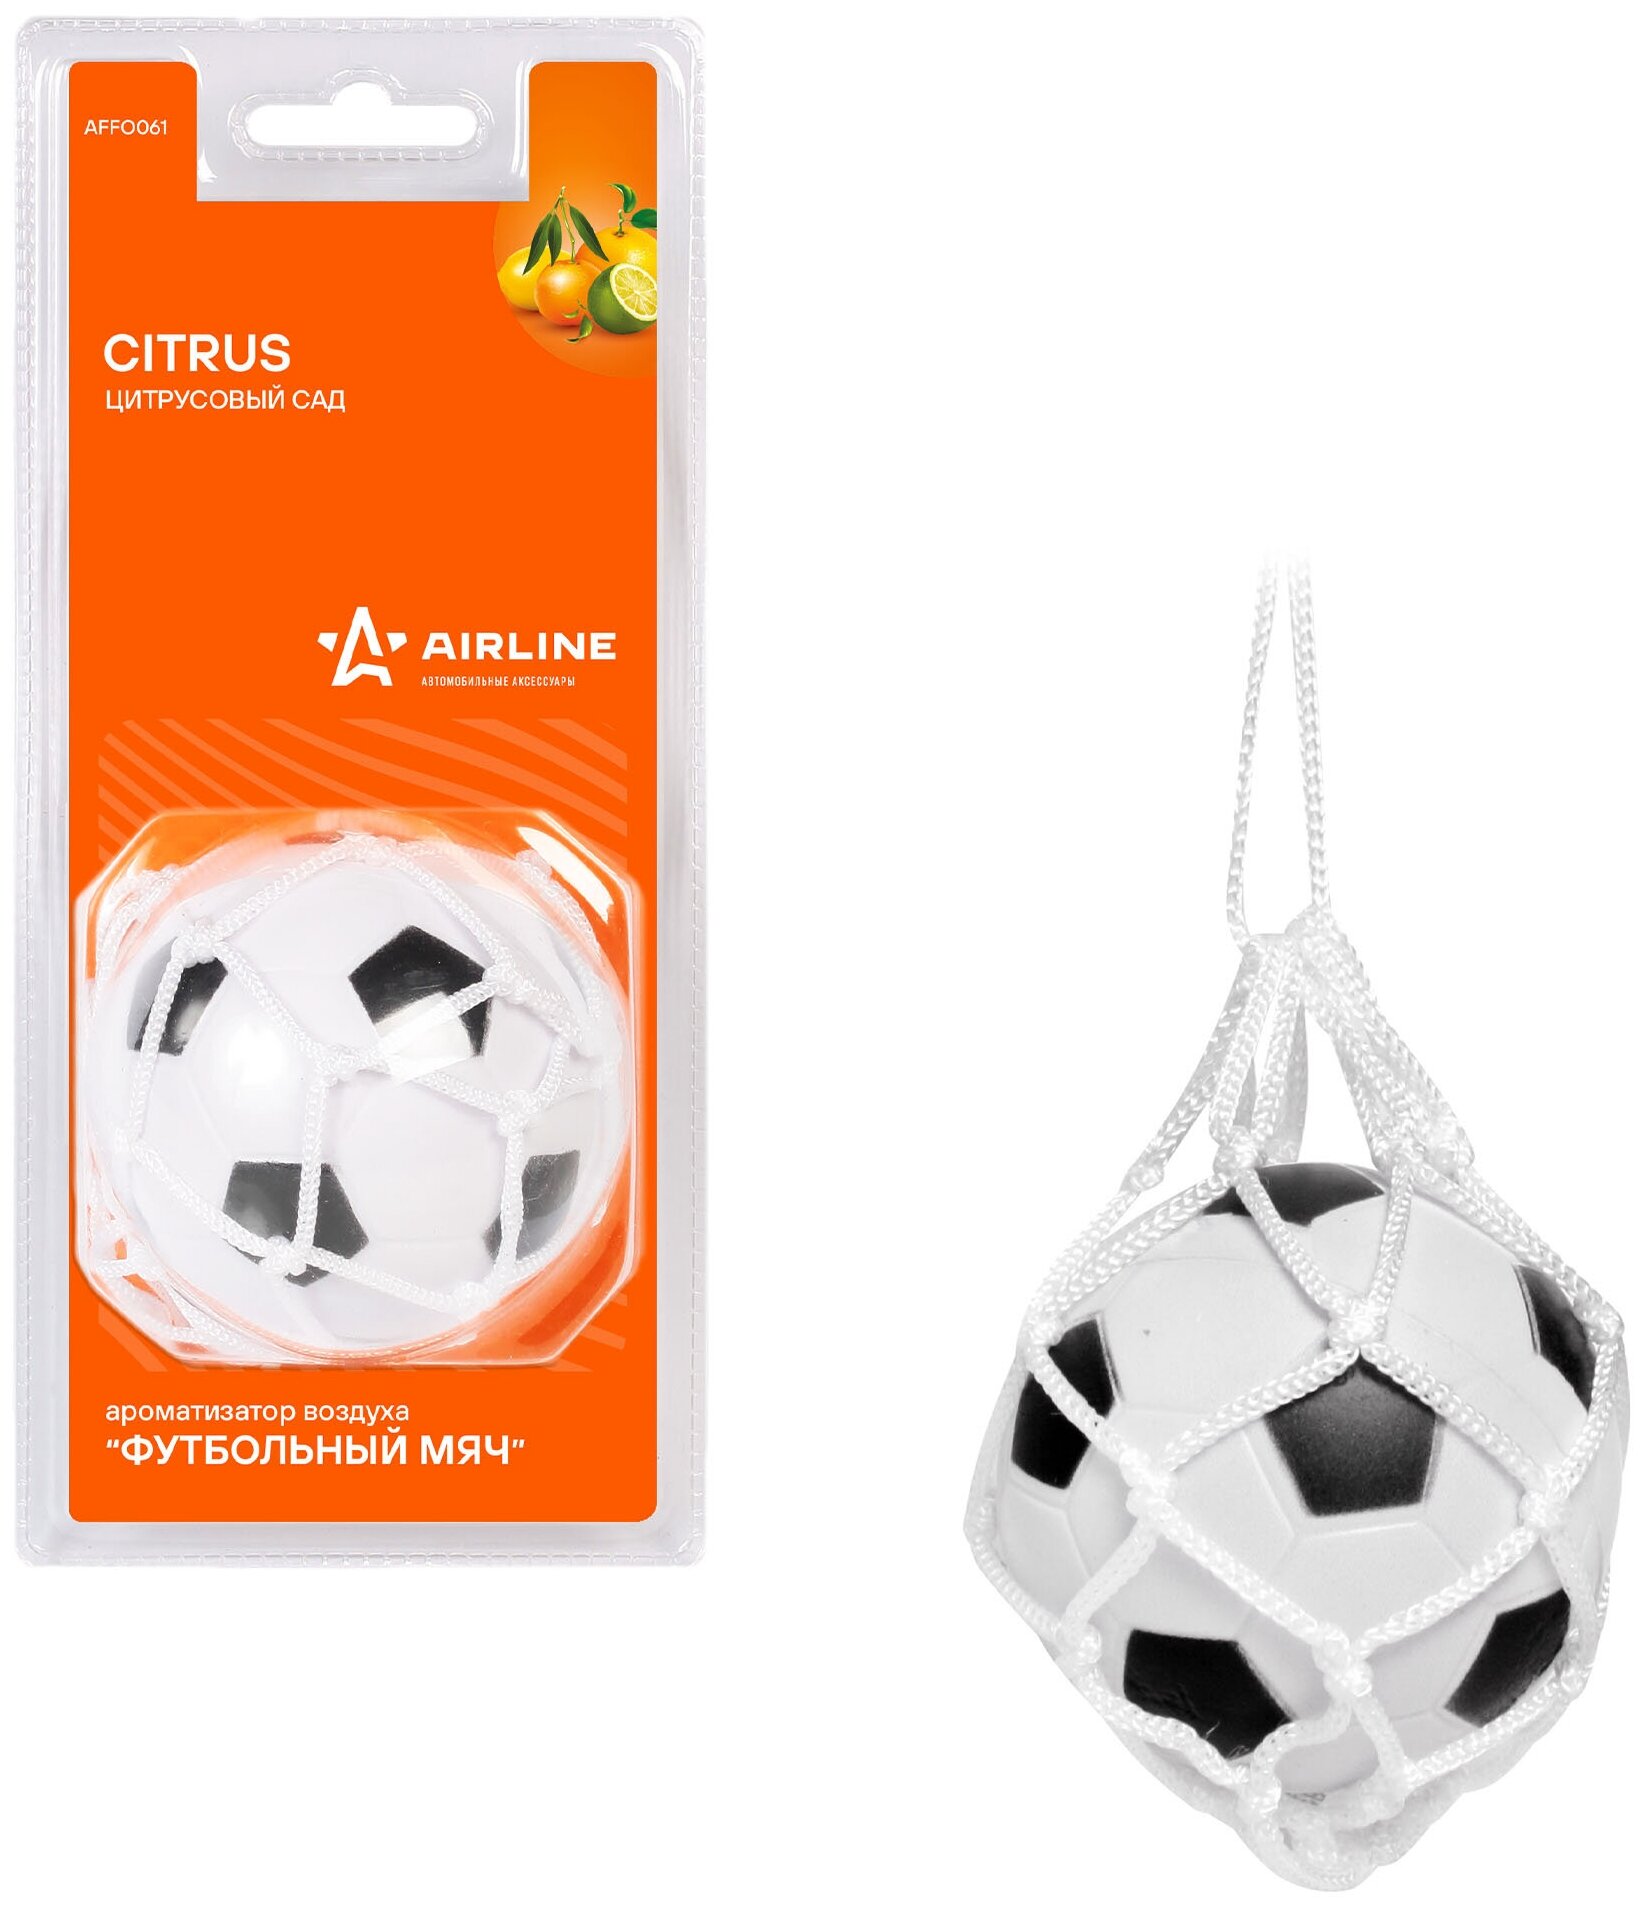 Ароматизатор подвесной Футбольный мяч цитрусовый сад AFFO061 Airline